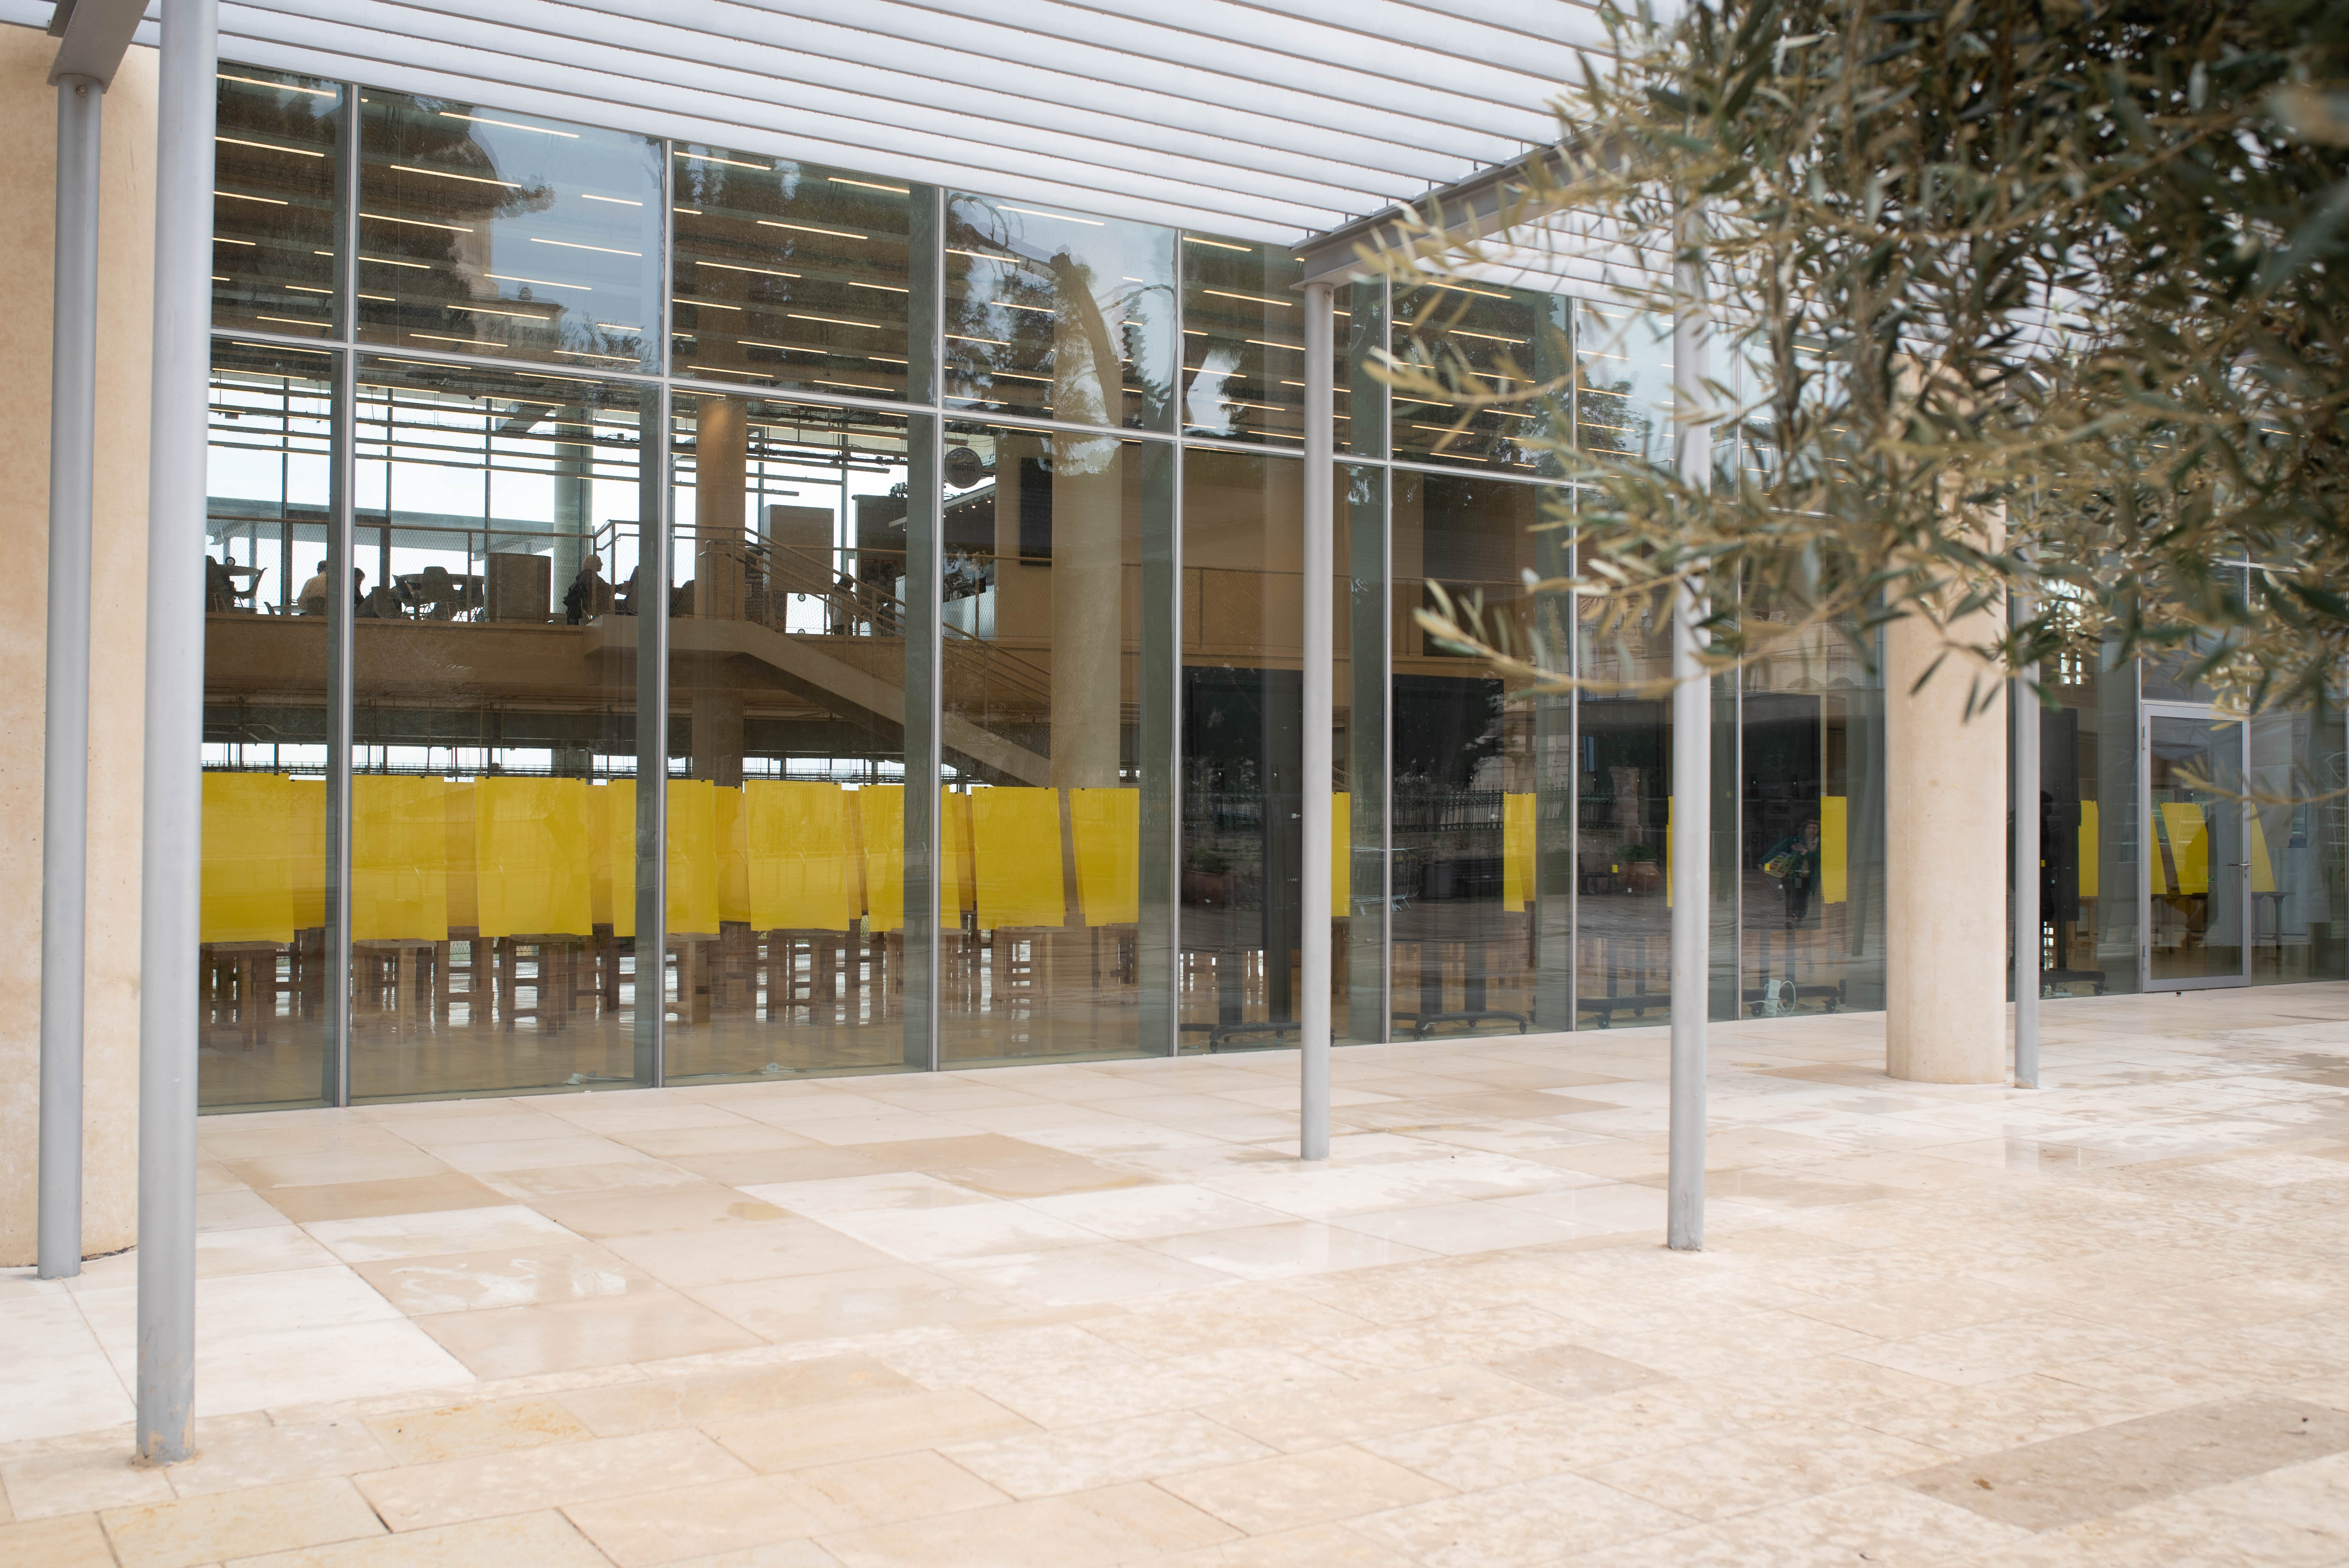 גליונות נייר צהובים עומדים ברחבה המרכזית בחזית הקמפוס